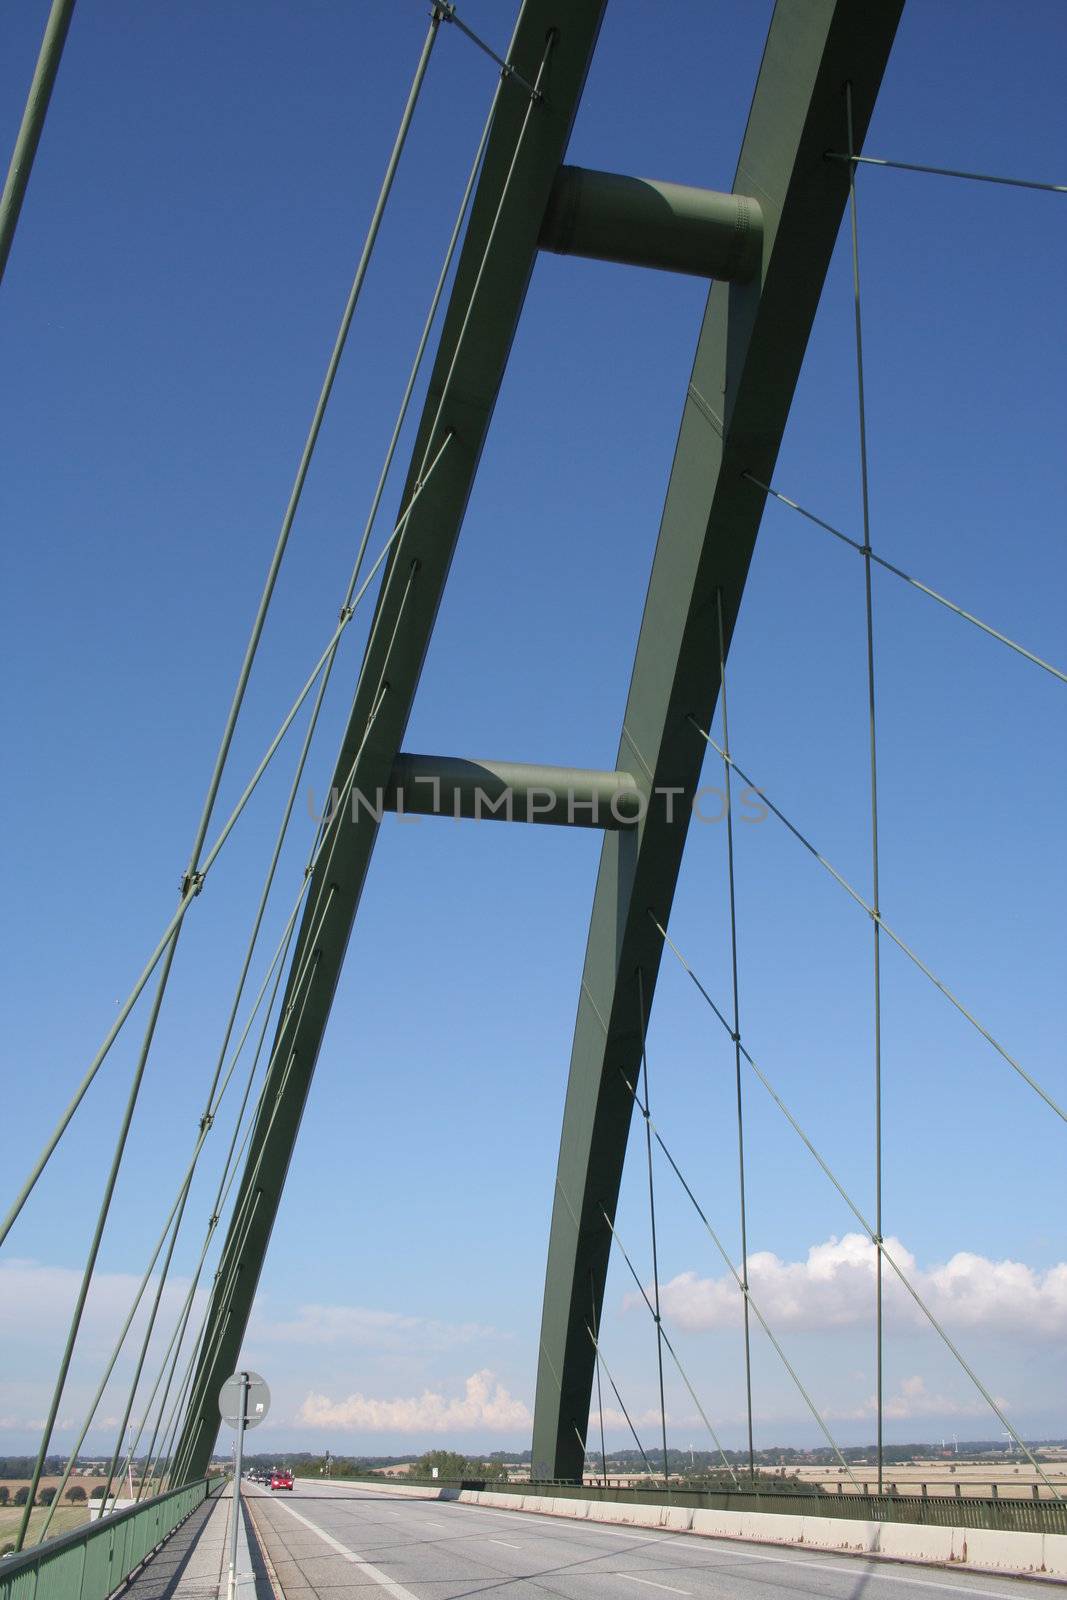 Detail of the Fehmarn Sund Bridge by bernjuer